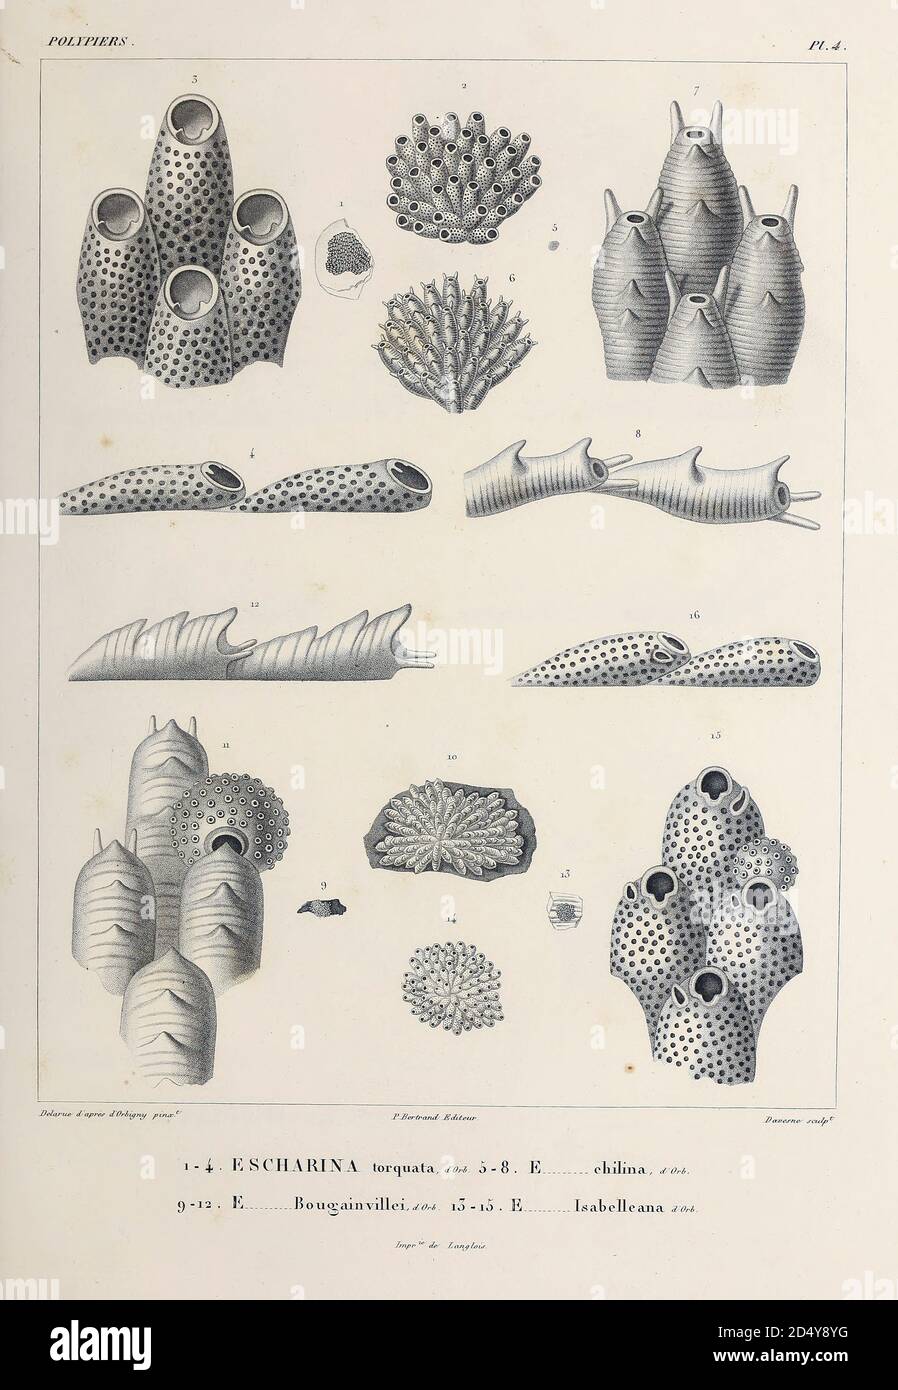 Bryozoa (auch bekannt als Polyzoa, Ektoprocta oder allgemein als Moostiere) sind ein Stamm von wirbellosen Wassertieren. Typischerweise etwa 0.5 Millimeter lang, sind sie Filterfuttergeräte, die Lebensmittelpartikel mit einem einziehbaren Lophophor, einer "Krone" aus mit Zilien ausgekleideten Tentakeln, aus dem Wasser sieben. Die meisten Meeresarten leben in tropischen Gewässern, Skizze aus dem Buch "Voyage dans l'Amérique Méridionale" [Reise nach Südamerika: (Brasilien, die östliche republik Uruguay, die argentinische Republik, Patagonien, die republik Chile, die republik Bolivien, die republik Peru), ausgeführt während des Yea Stockfoto